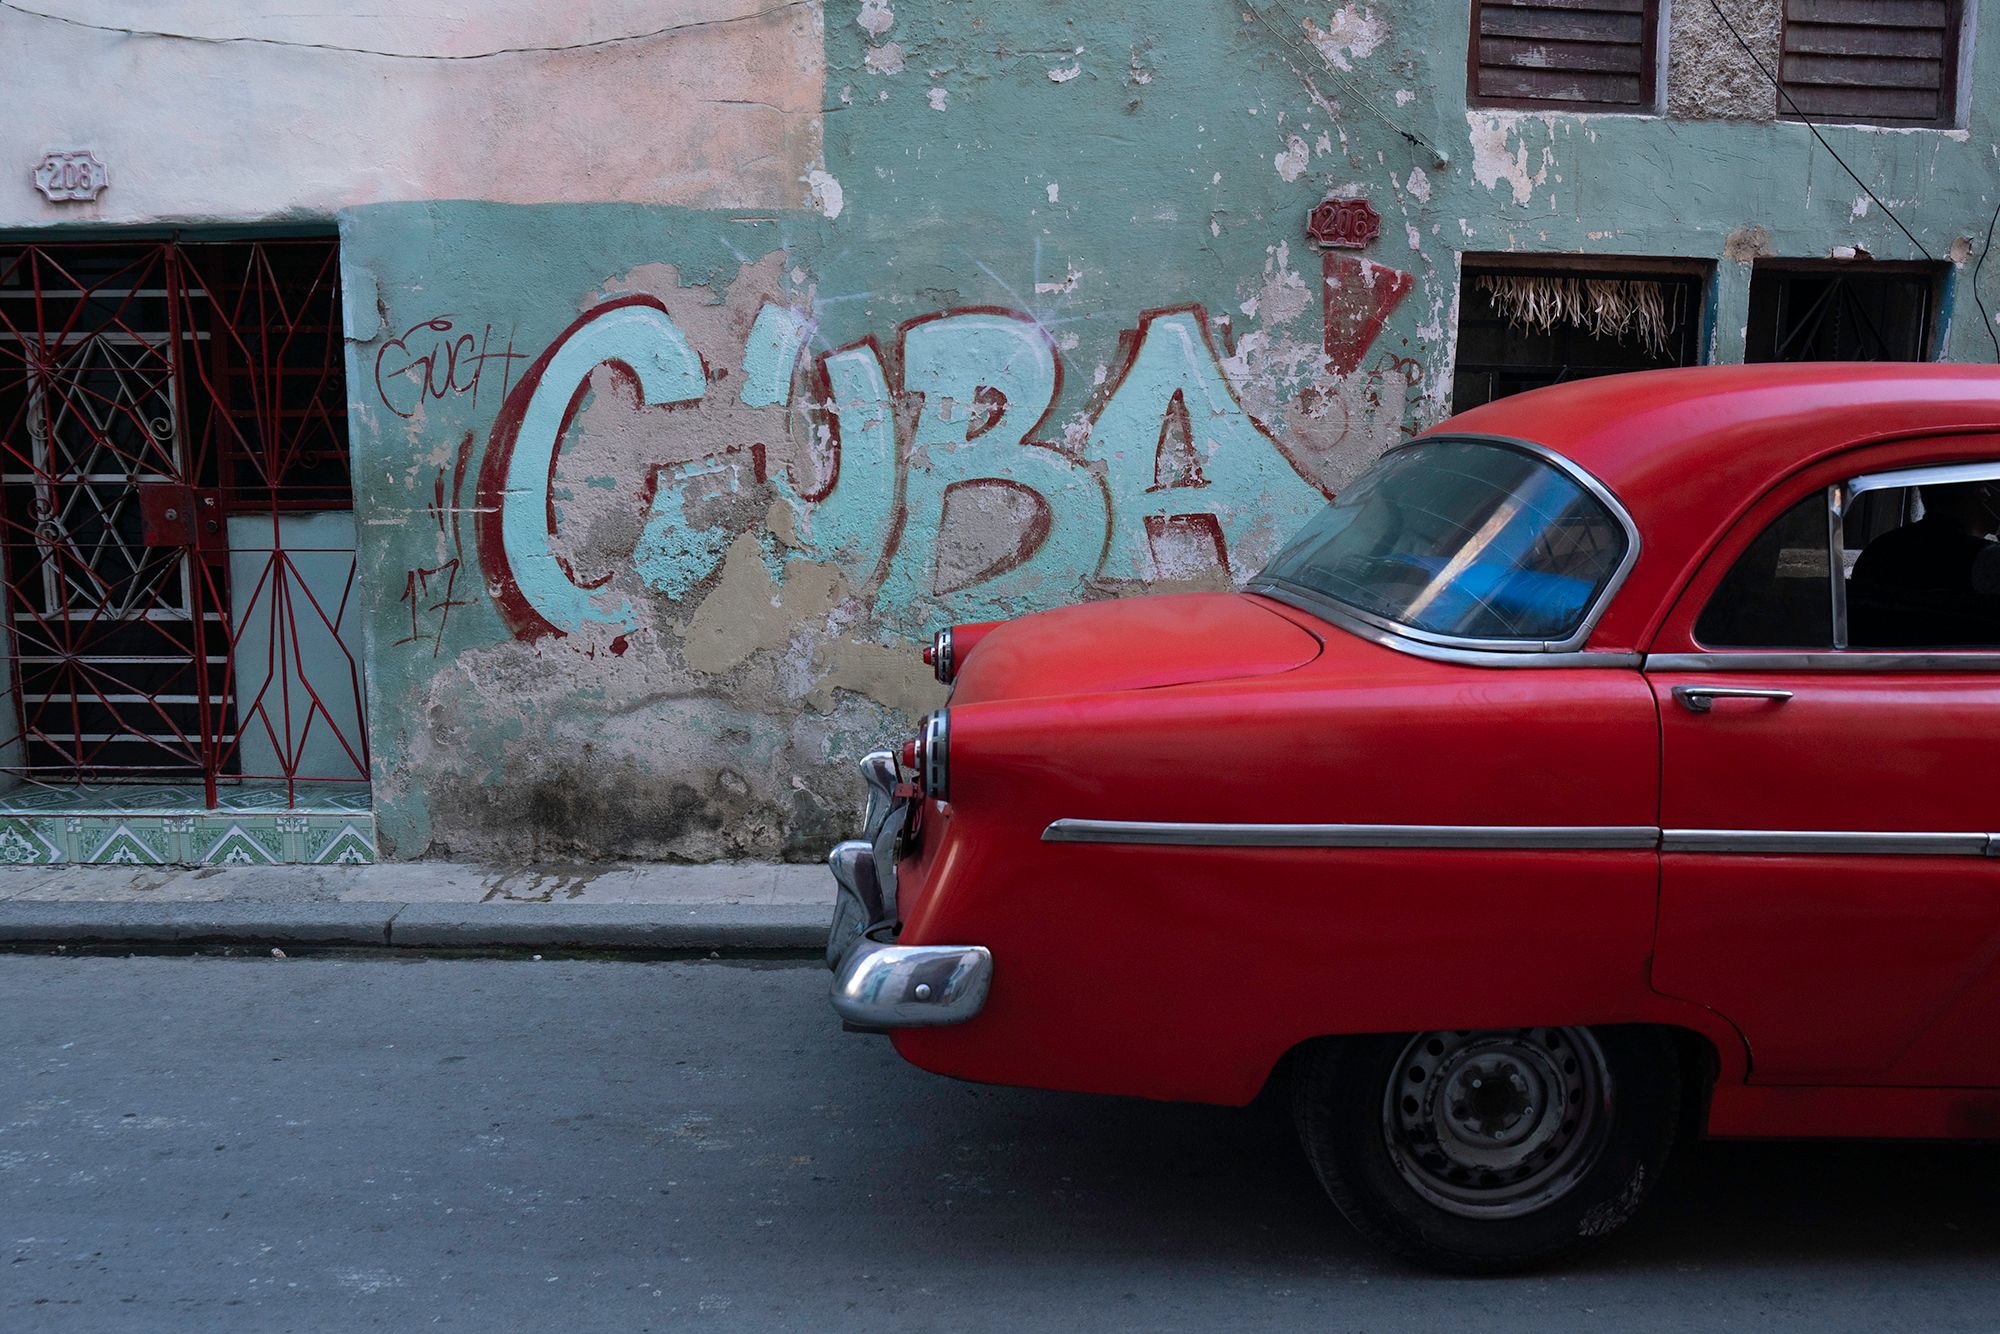 Cuba Underlined